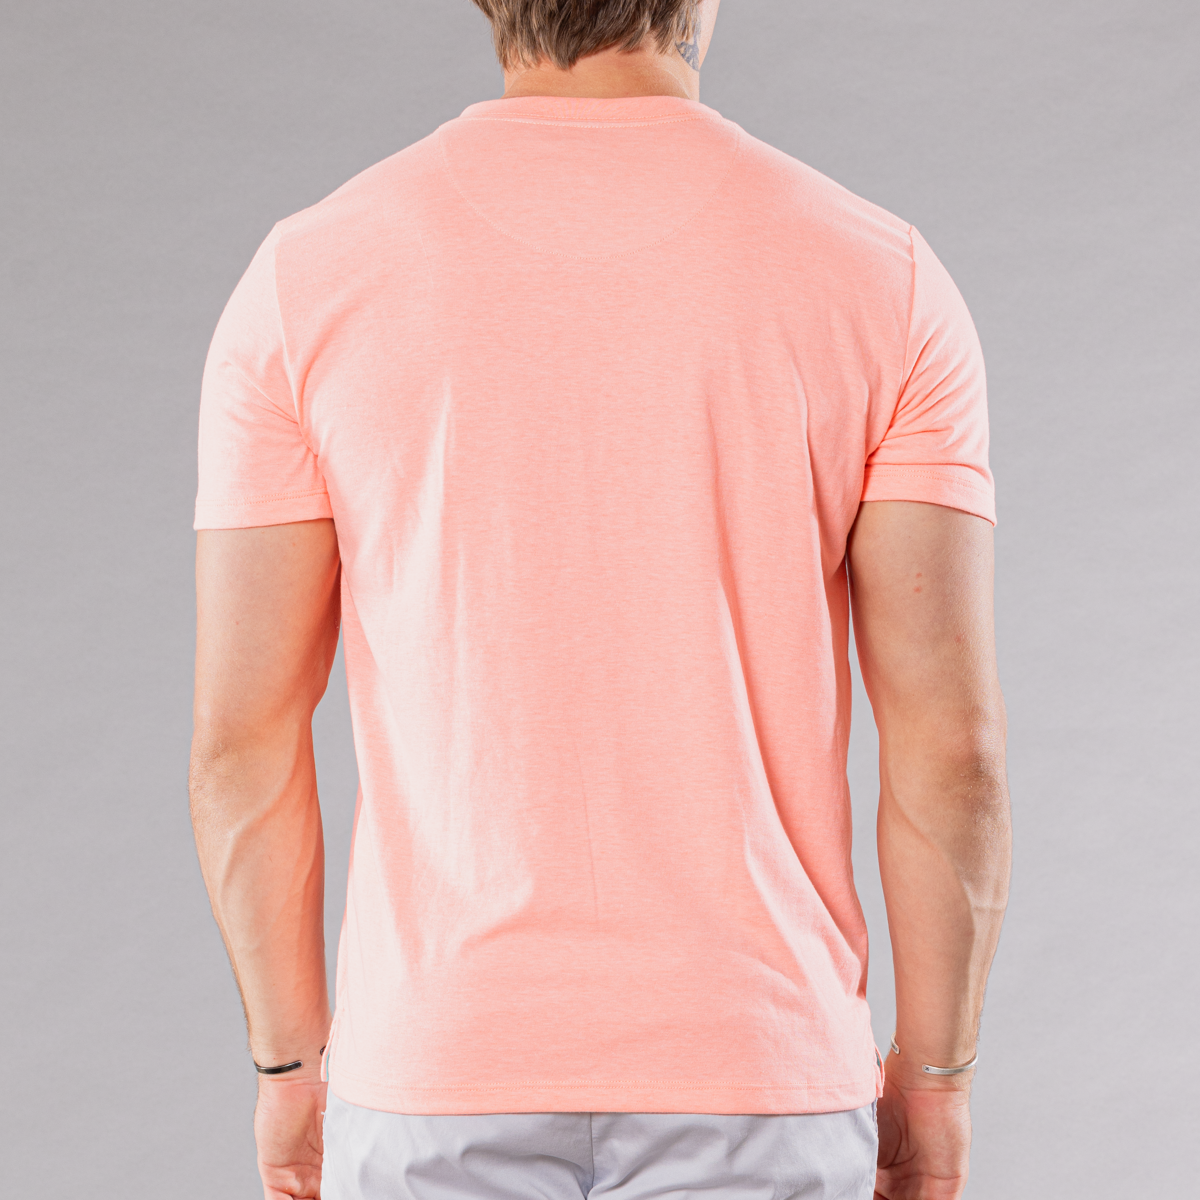 Men's Solid V-Neck T Shirt - Coral Heather